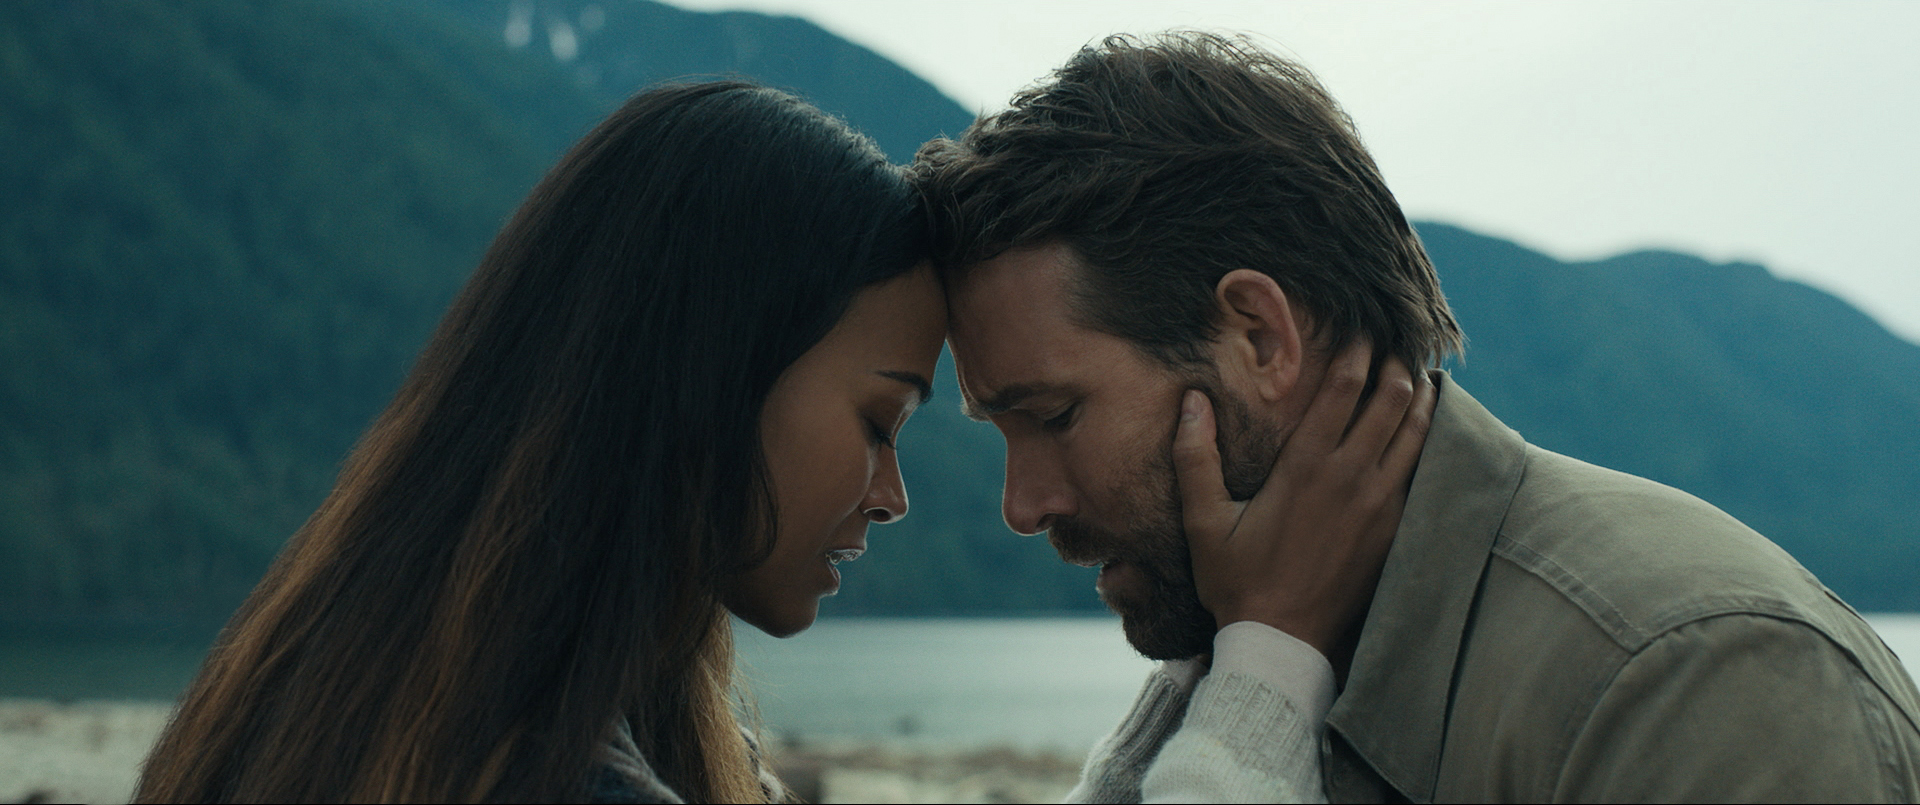 Zoe Saldana und Ryan Reynolds Stirn an Stirn mit geschlossenen Augen. Im Hintergrund ein See und Berge. The Adam Project